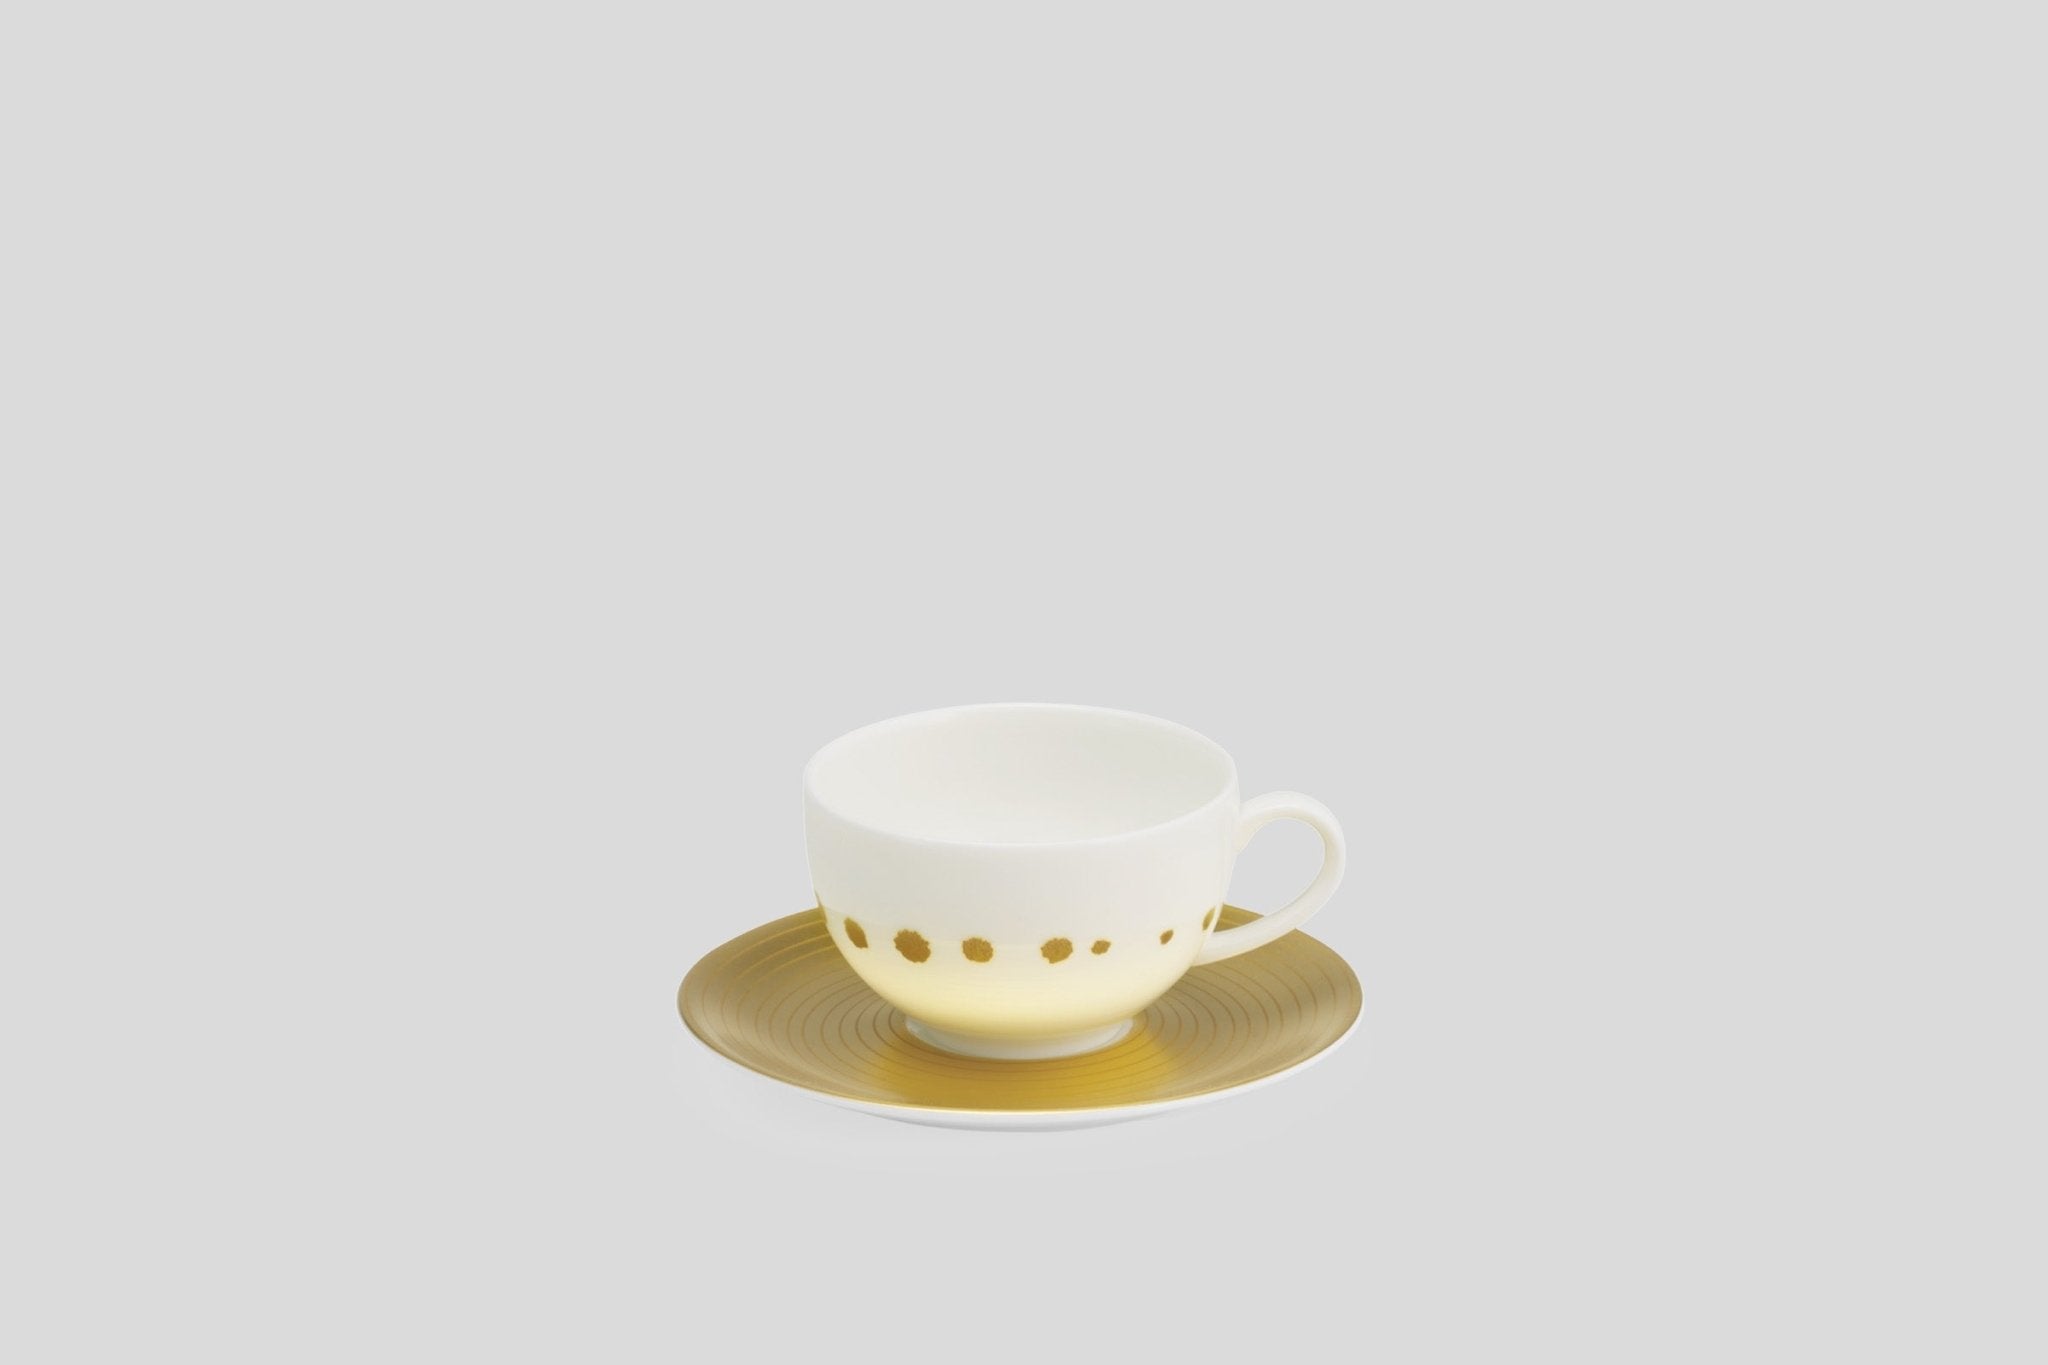 Designer-Luxury-Modern-Dibbern Golden Pearls Espresso Cup & Saucer-Dibbern-Gold-Golden Pearls-Bodo Sperlein-Bone China-Designer-Luxury-Modern-Tasse-Becher-Kaffee Tasse